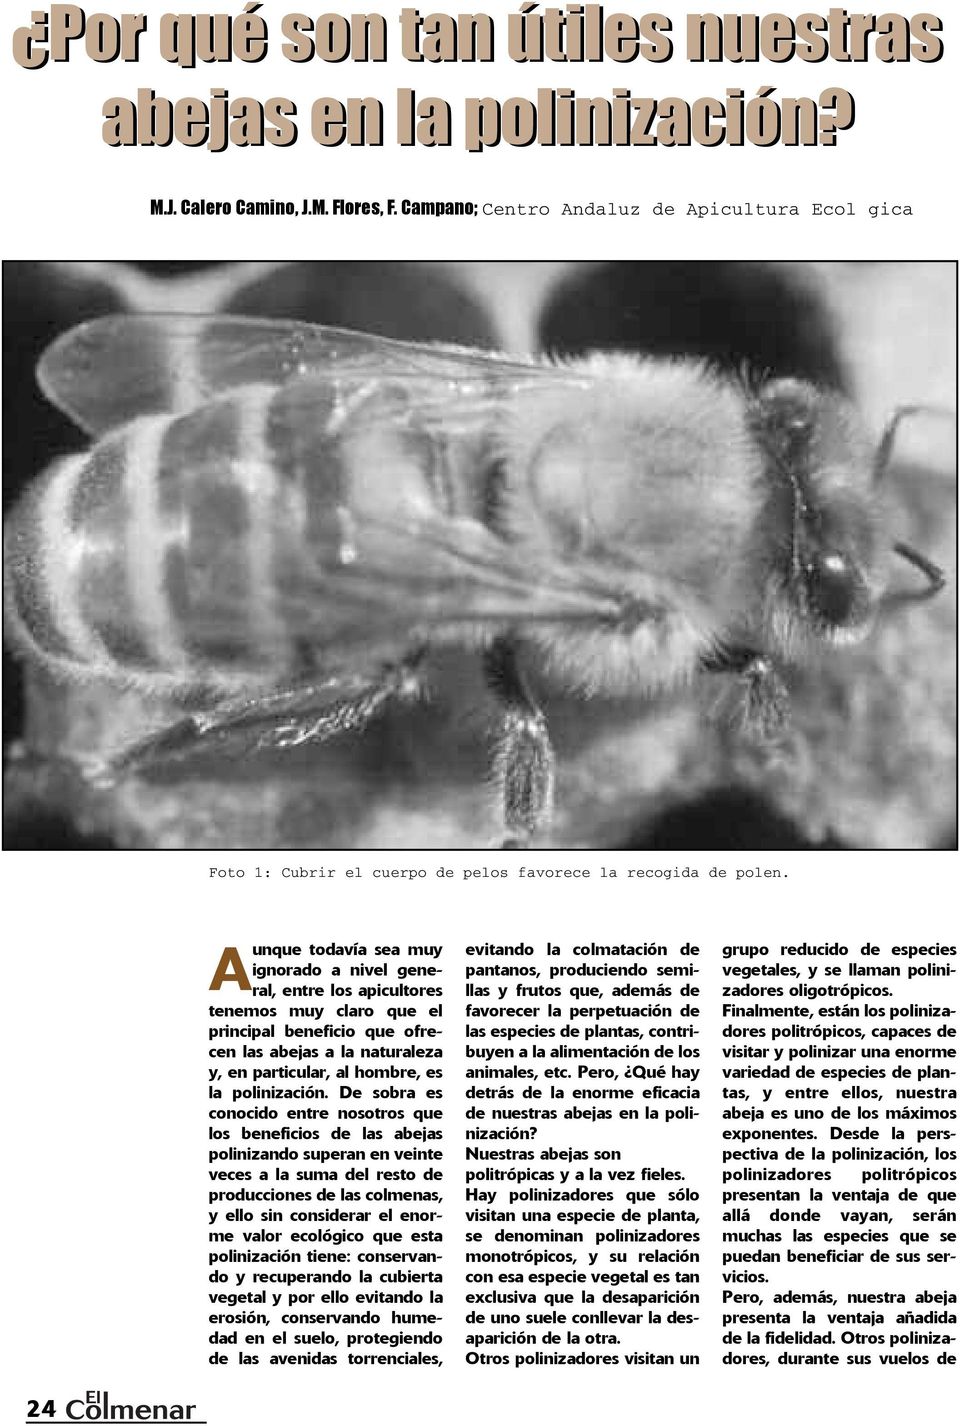 A unque todavía sea muy ignorado a nivel general, entre los apicultores tenemos muy claro que el principal beneficio que ofrecen las abejas a la naturaleza y, en particular, al hombre, es la